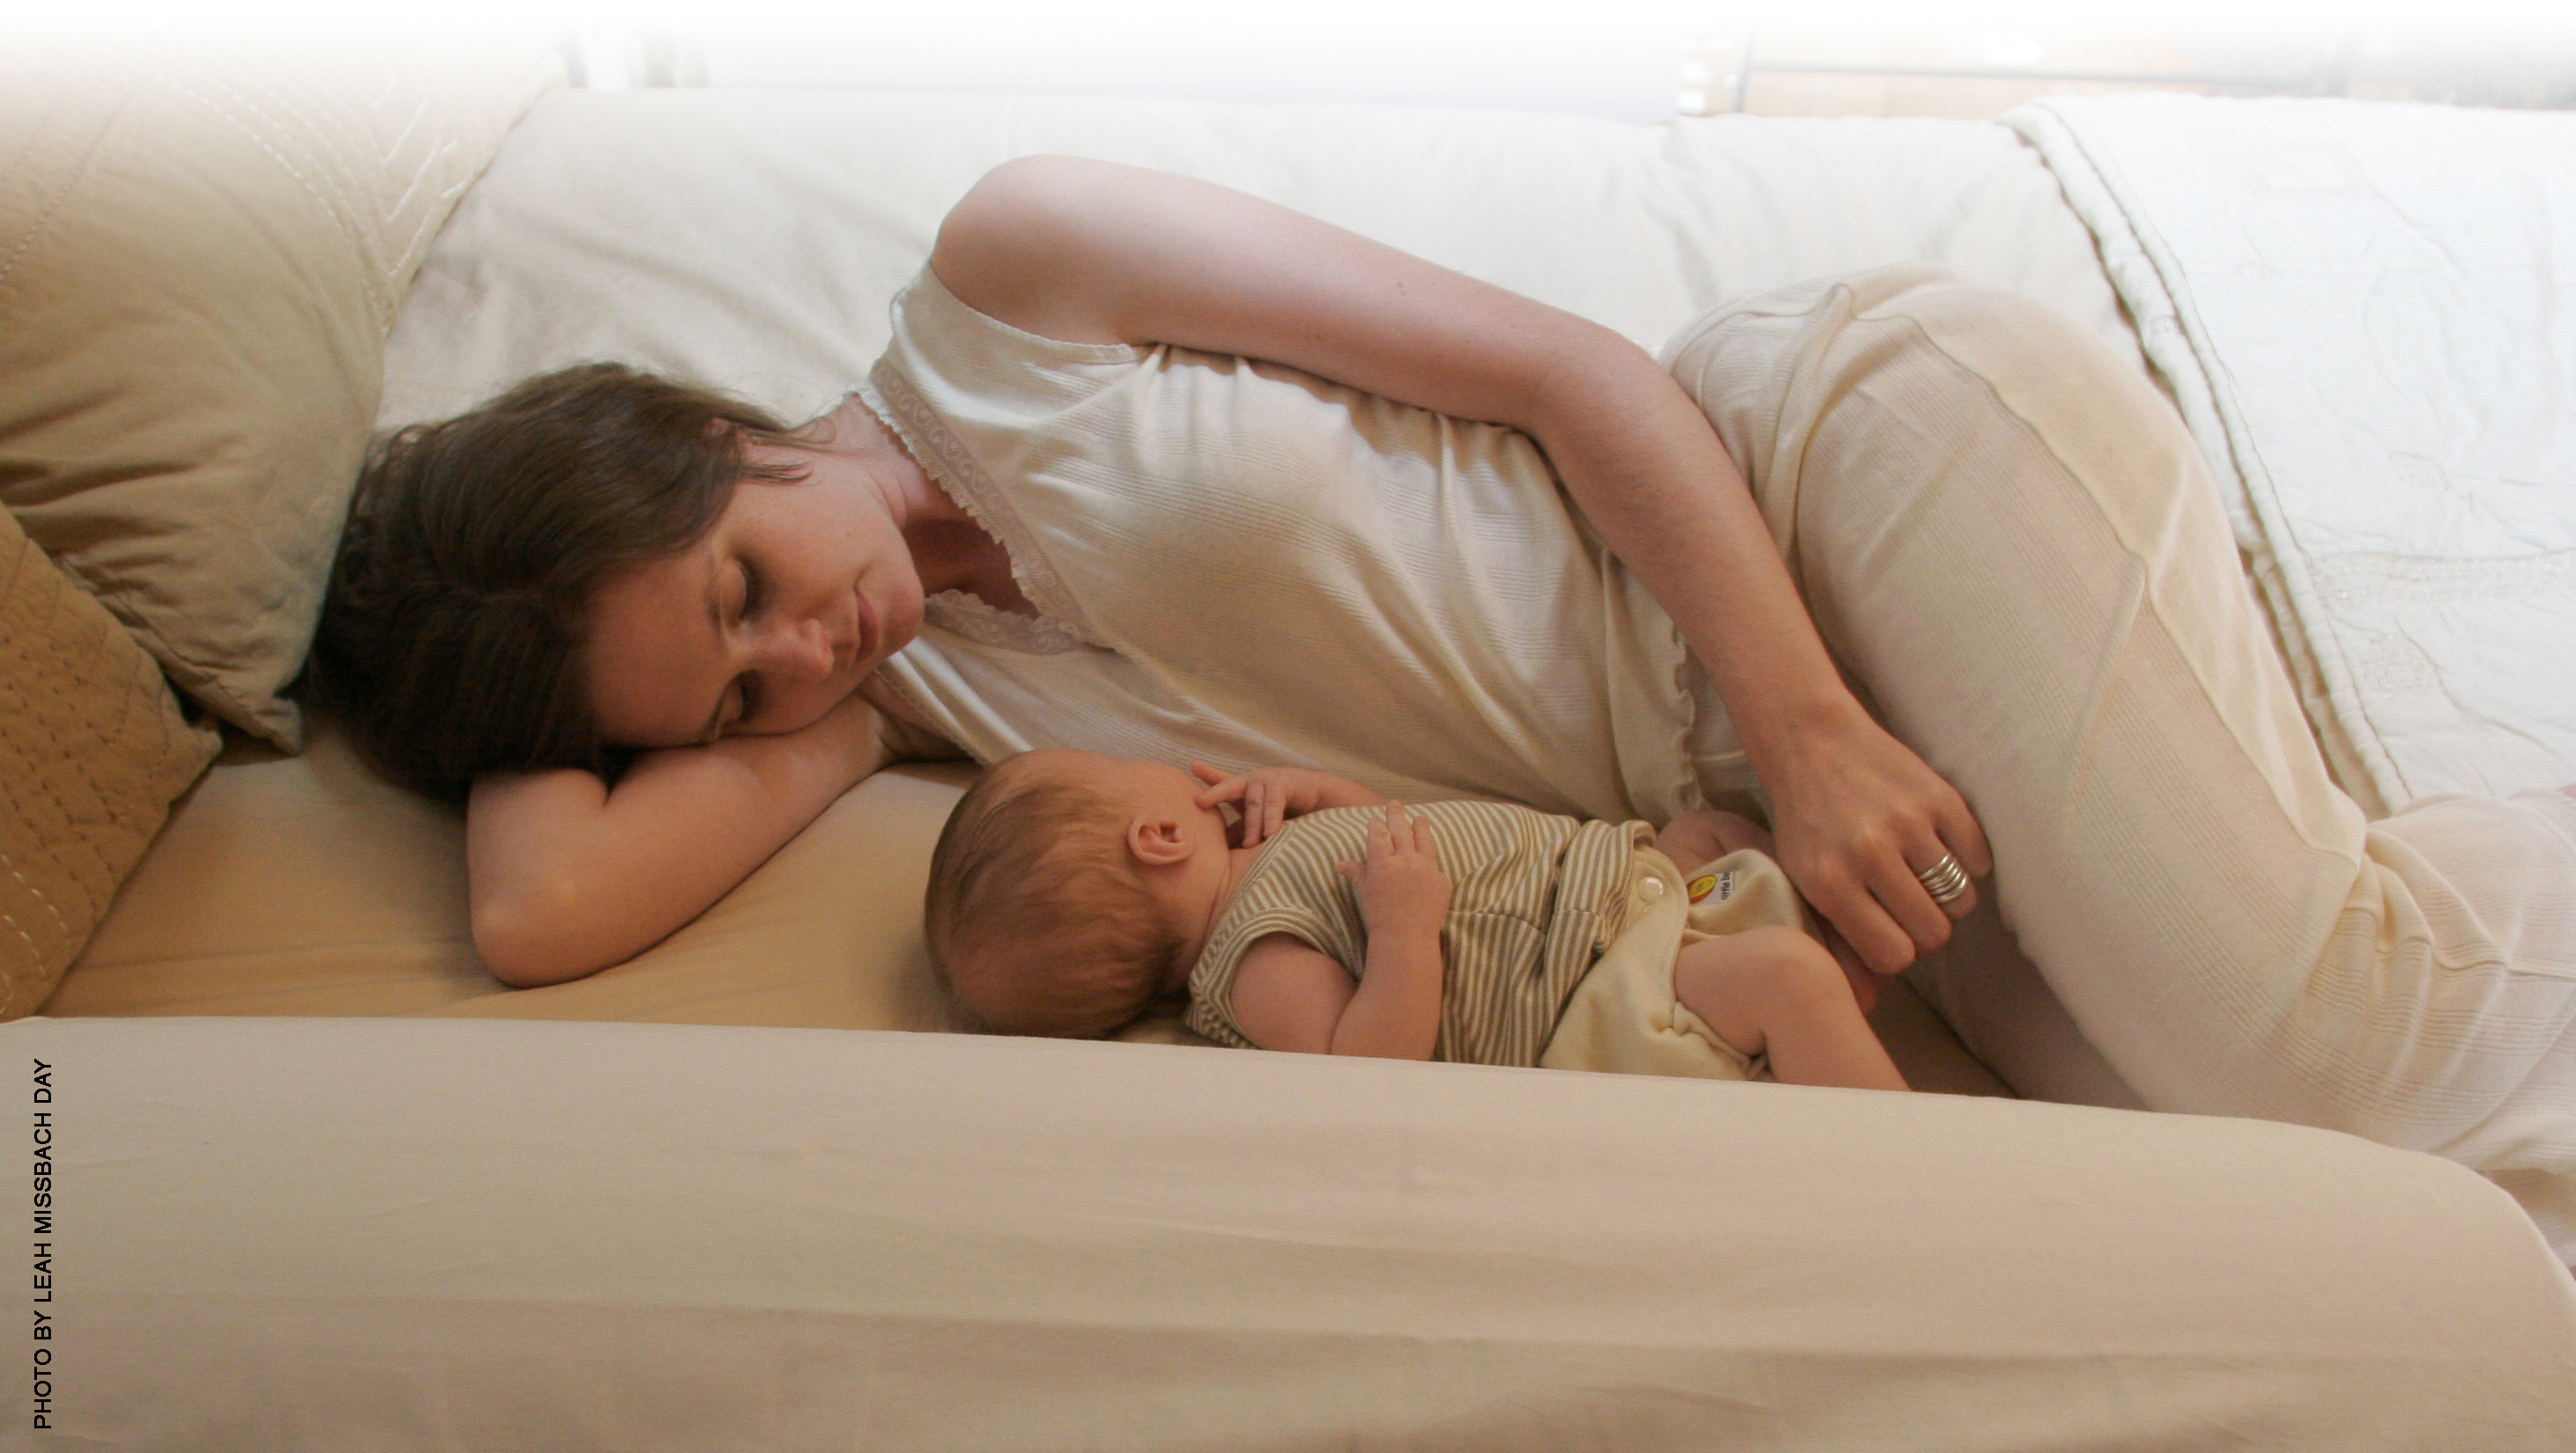 Делает куни маме видео. Совместный сон с ребенком. Спящий ребенок. Сон матери с ребенком в одной кровати.